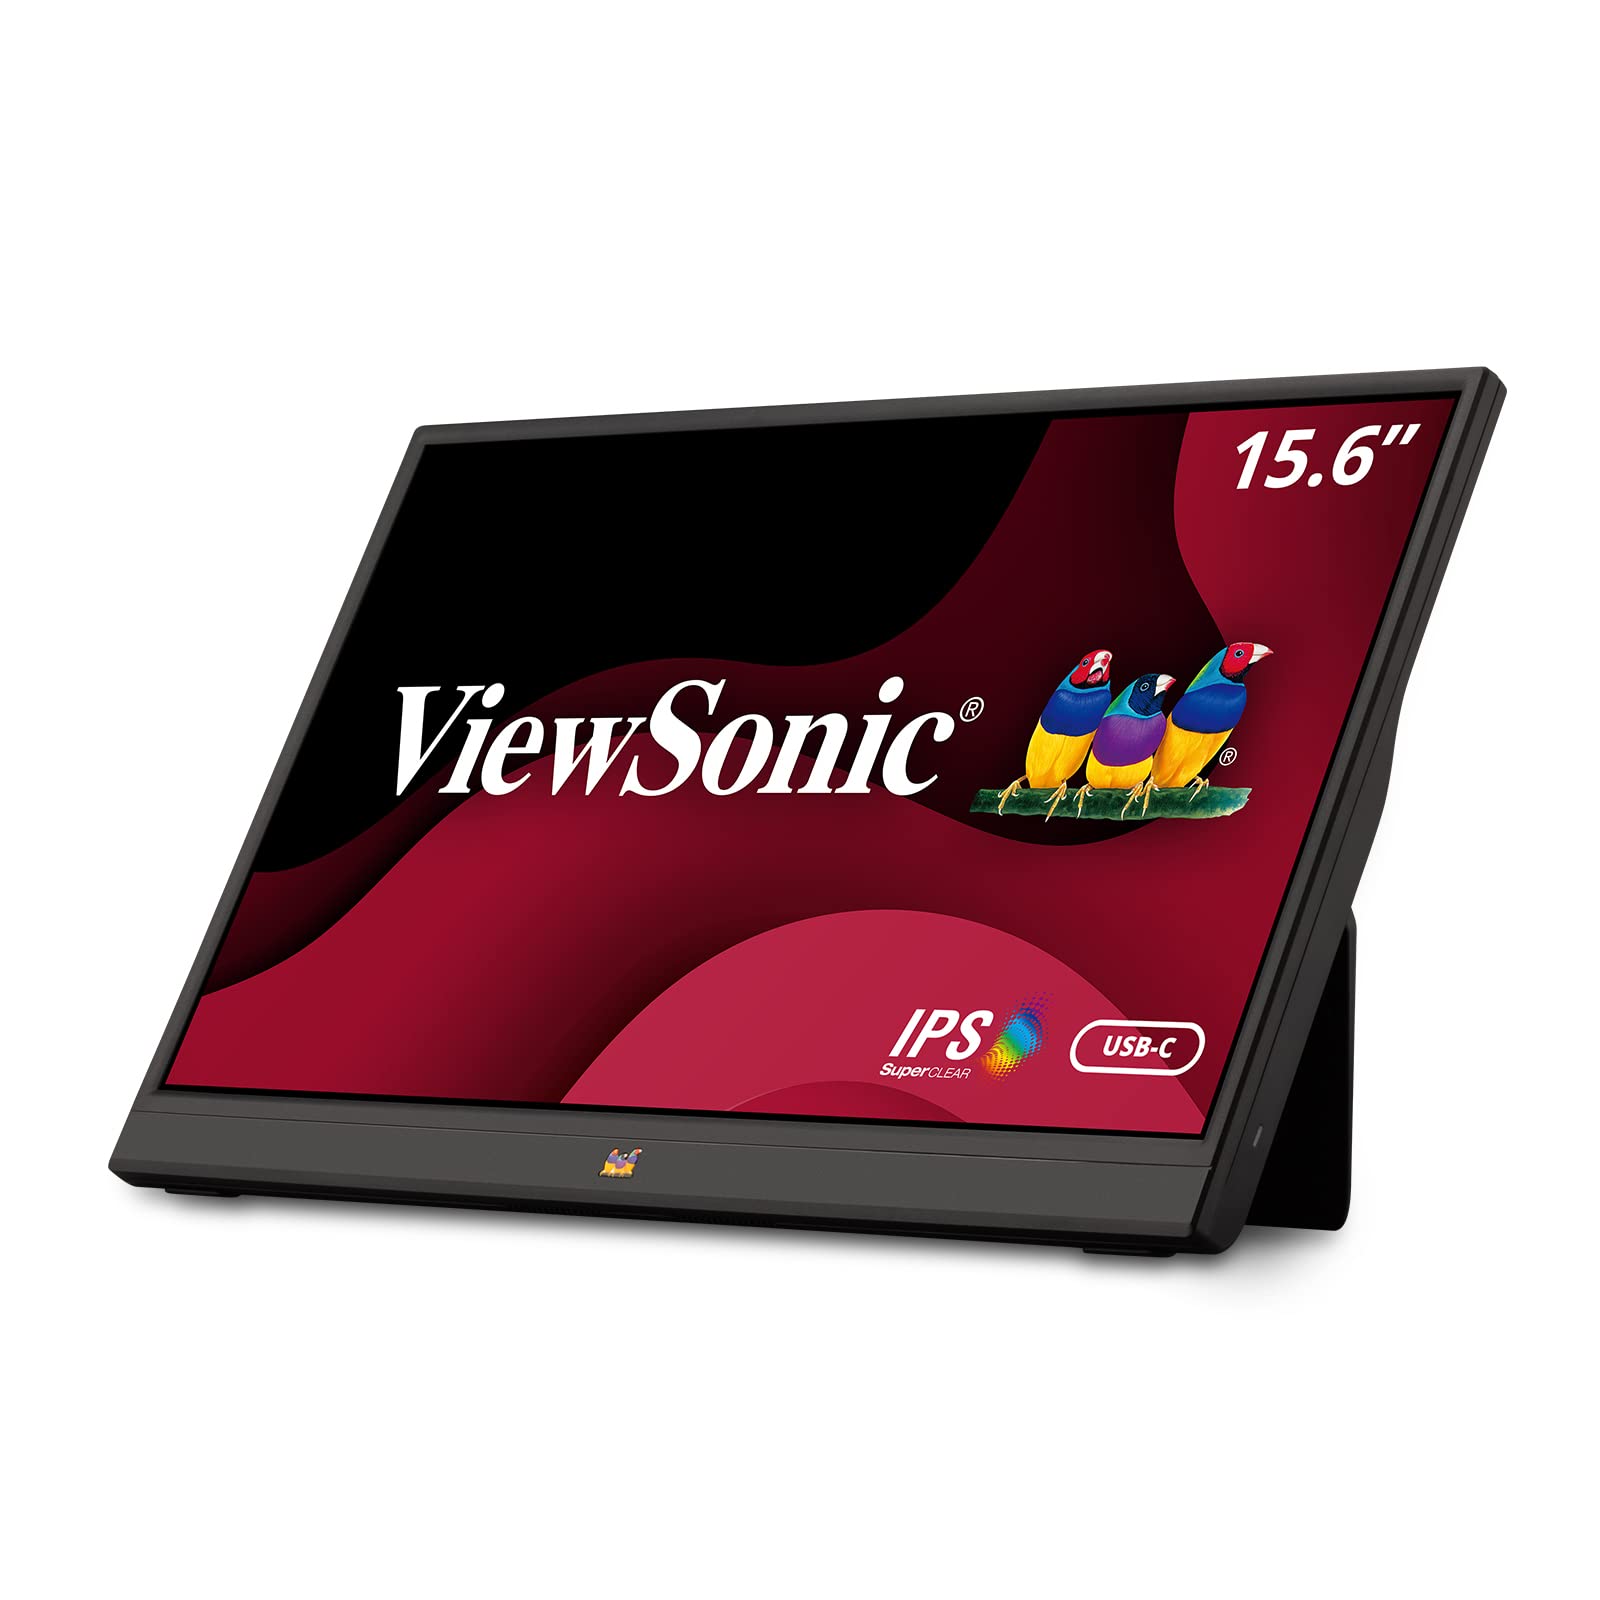 Viewsonic VA1655 15.6 インチ 1080p ポータブル IPS モニター、内蔵スタンド、モ...